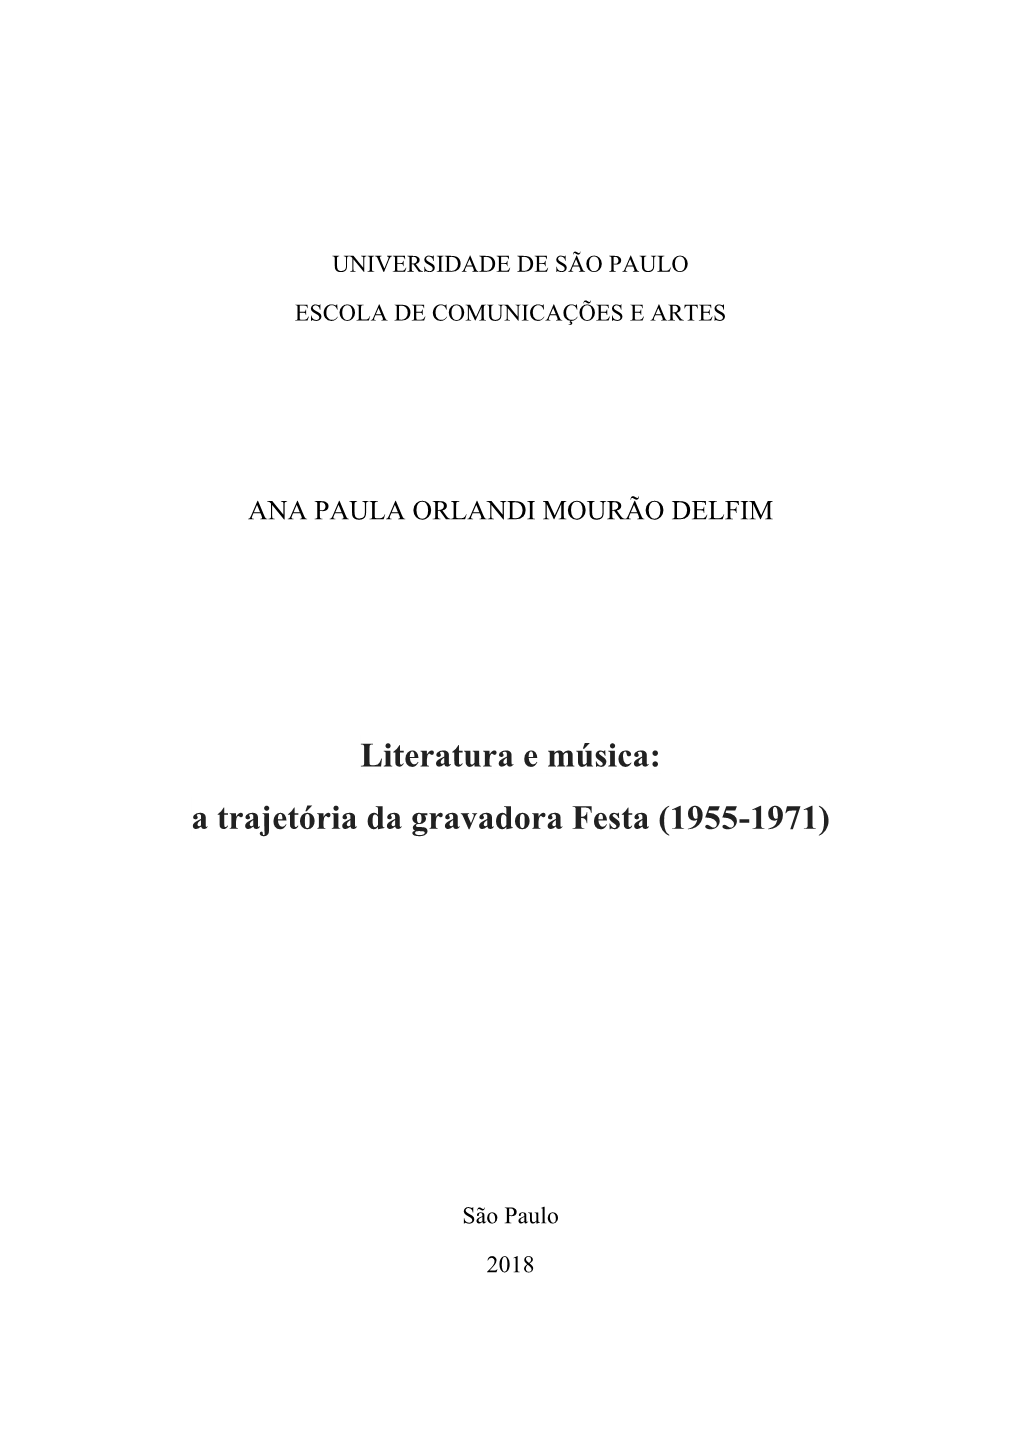 Literatura E Música: a Trajetória Da Gravadora Festa (1955-1971)